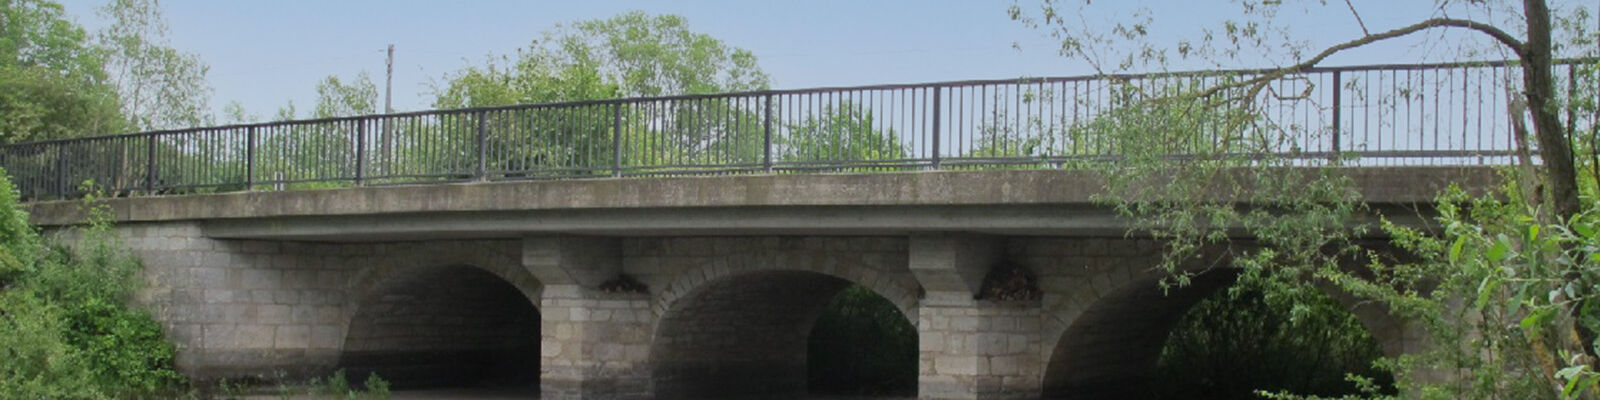 Brücke in Gronau